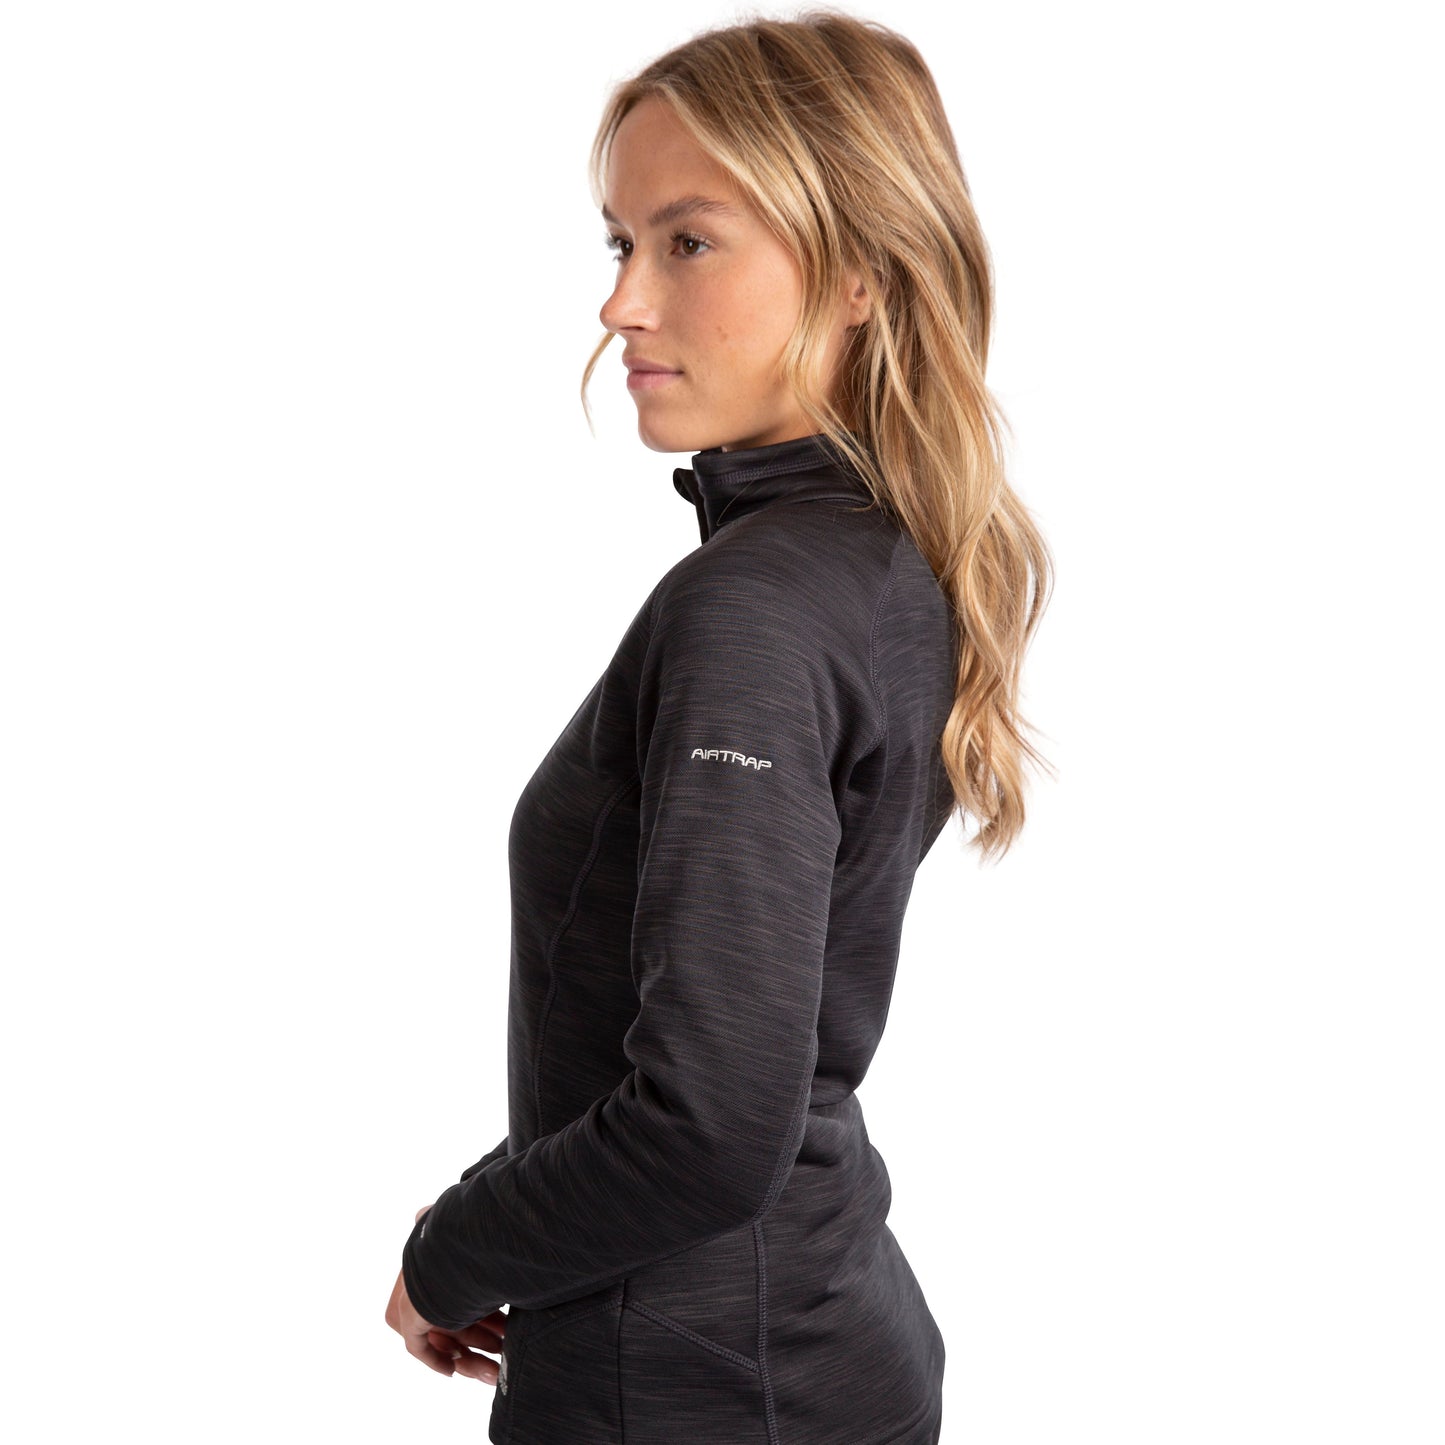 Fairford Women's Half Zip Fleece Top in Black Marl